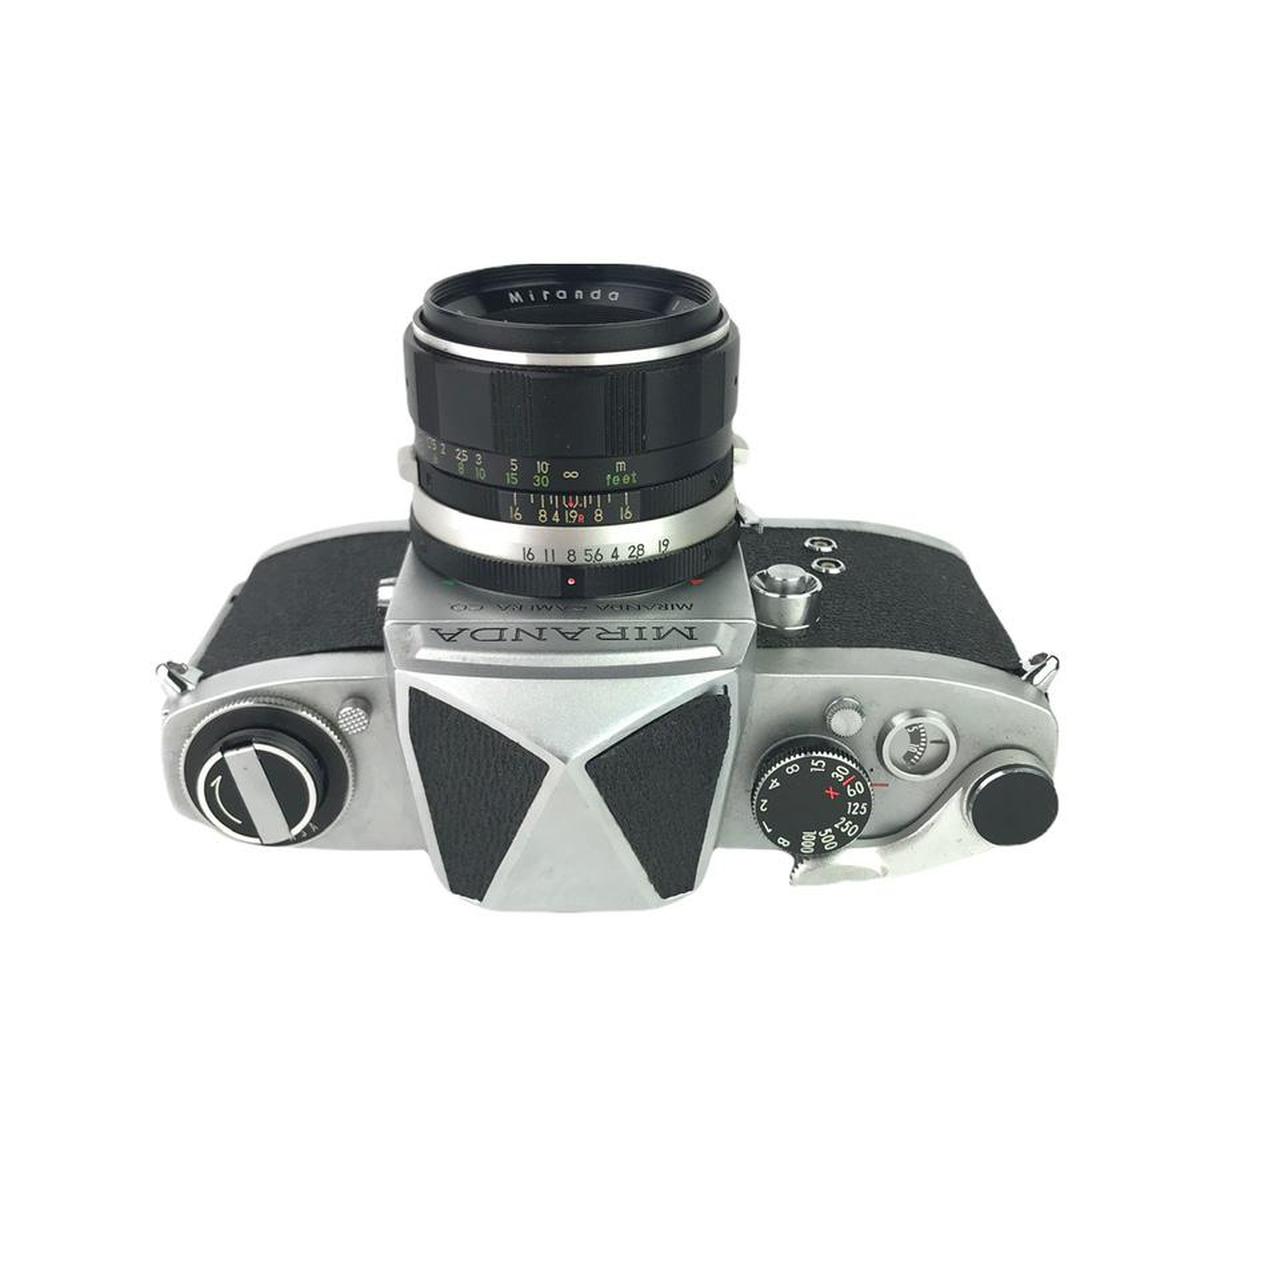 Product Image 3 - Miranda T Film Camera 

Comes